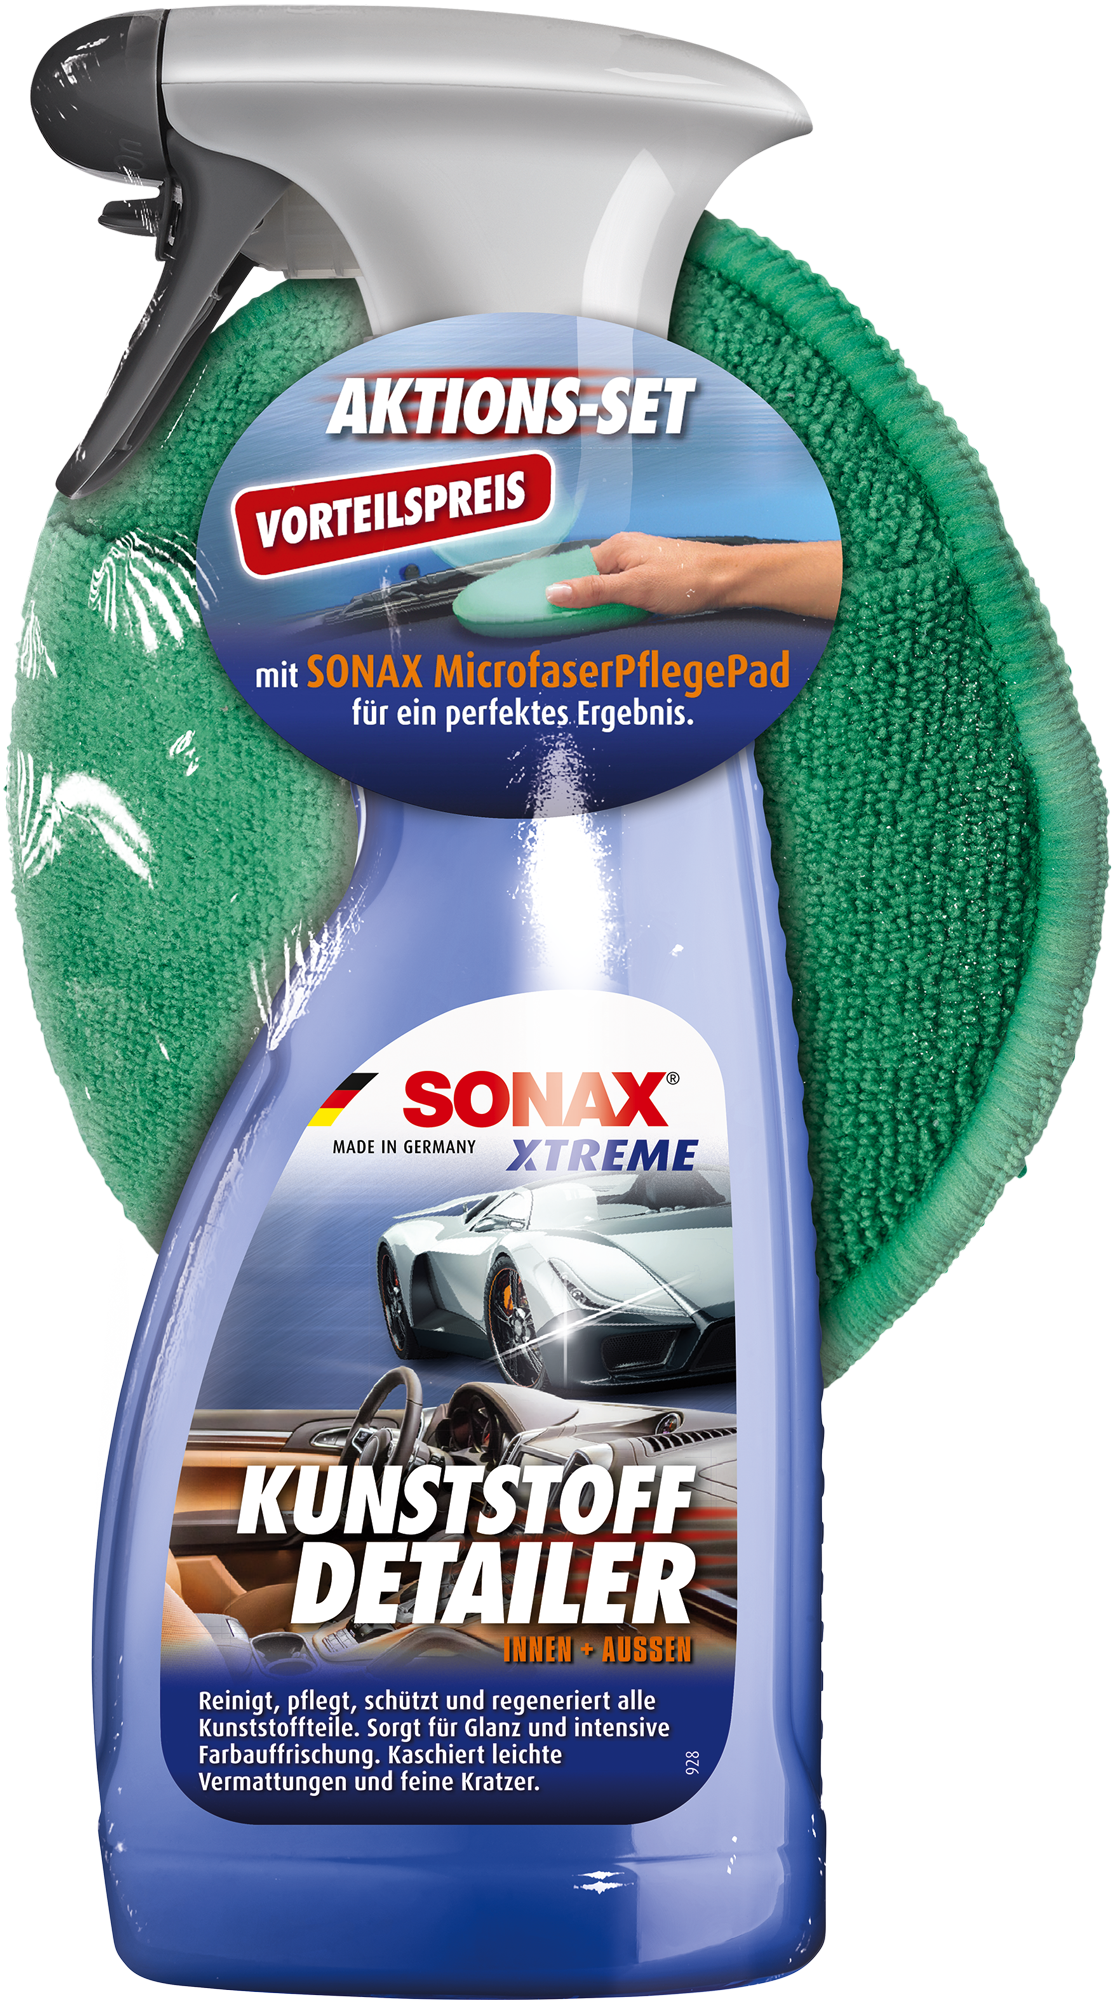 SONAX KlimaPowerCleaner AirAid Green Lemon 100 ml, Innenraum, Reinigung &  Pflege, Rund ums Fahrzeug